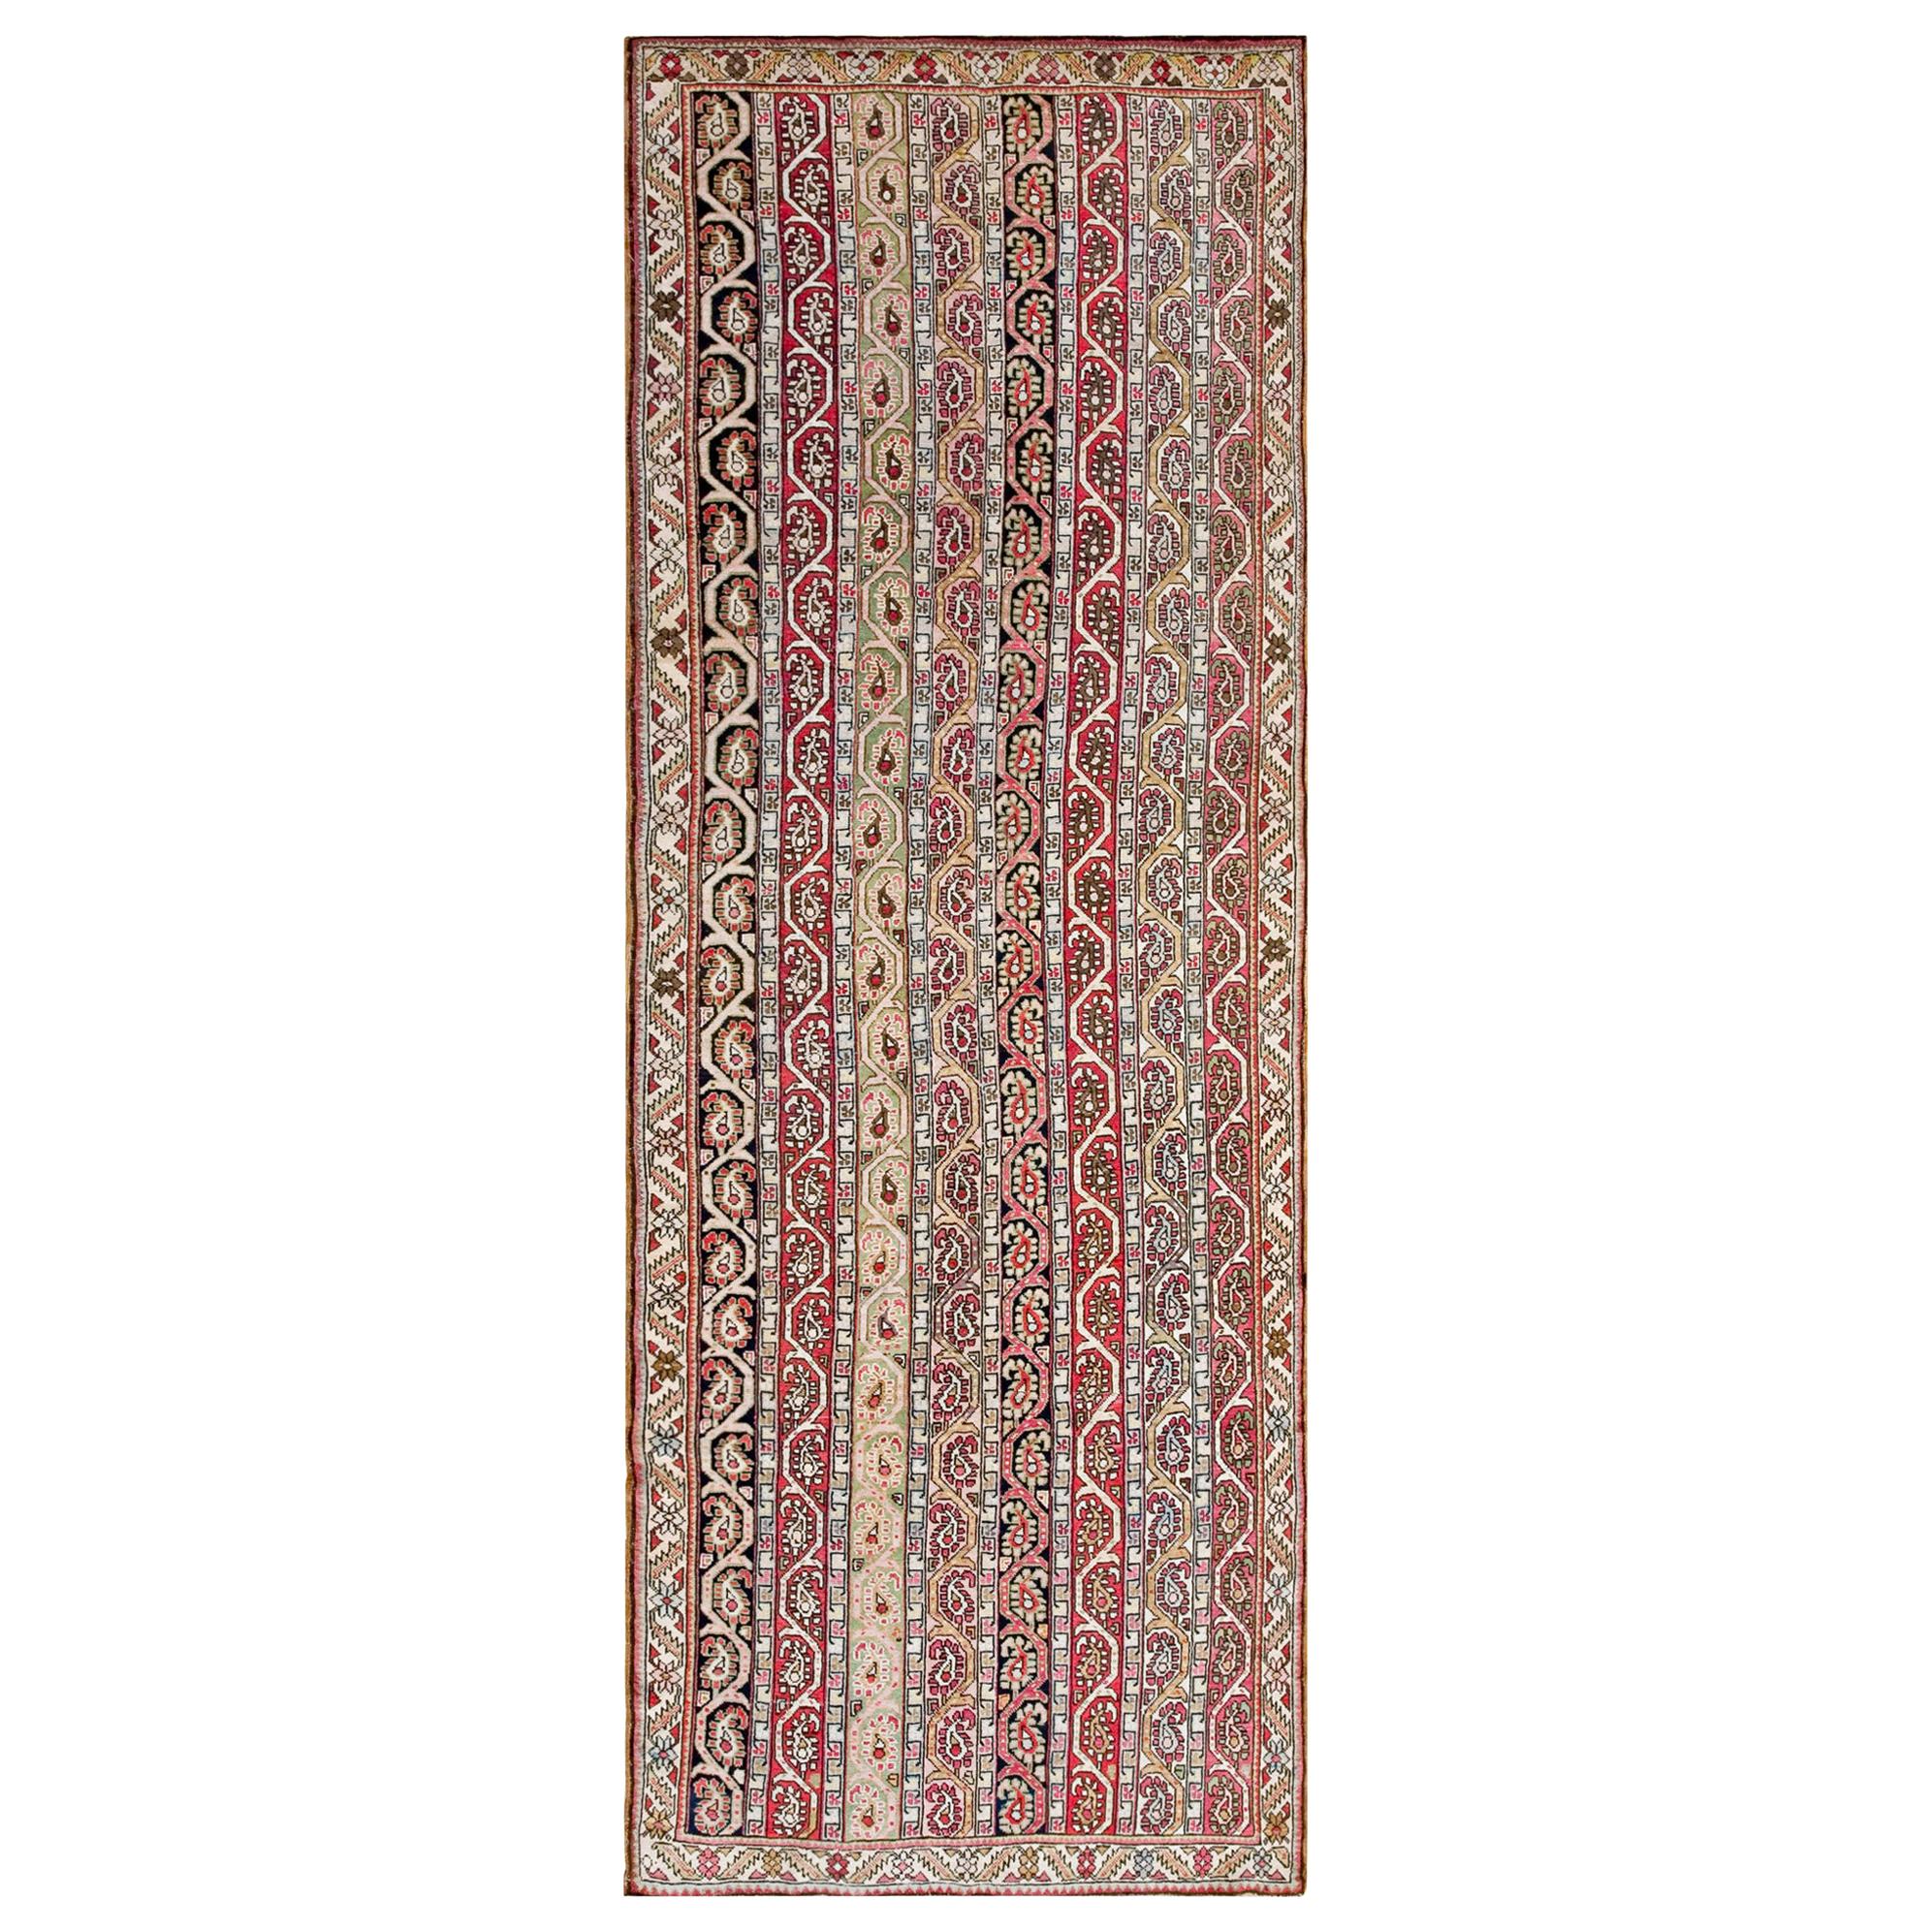 Kaukasischer Karabagh-Teppich aus dem 19. Jahrhundert ( 4'2" x 11'8" - 127 x 356")